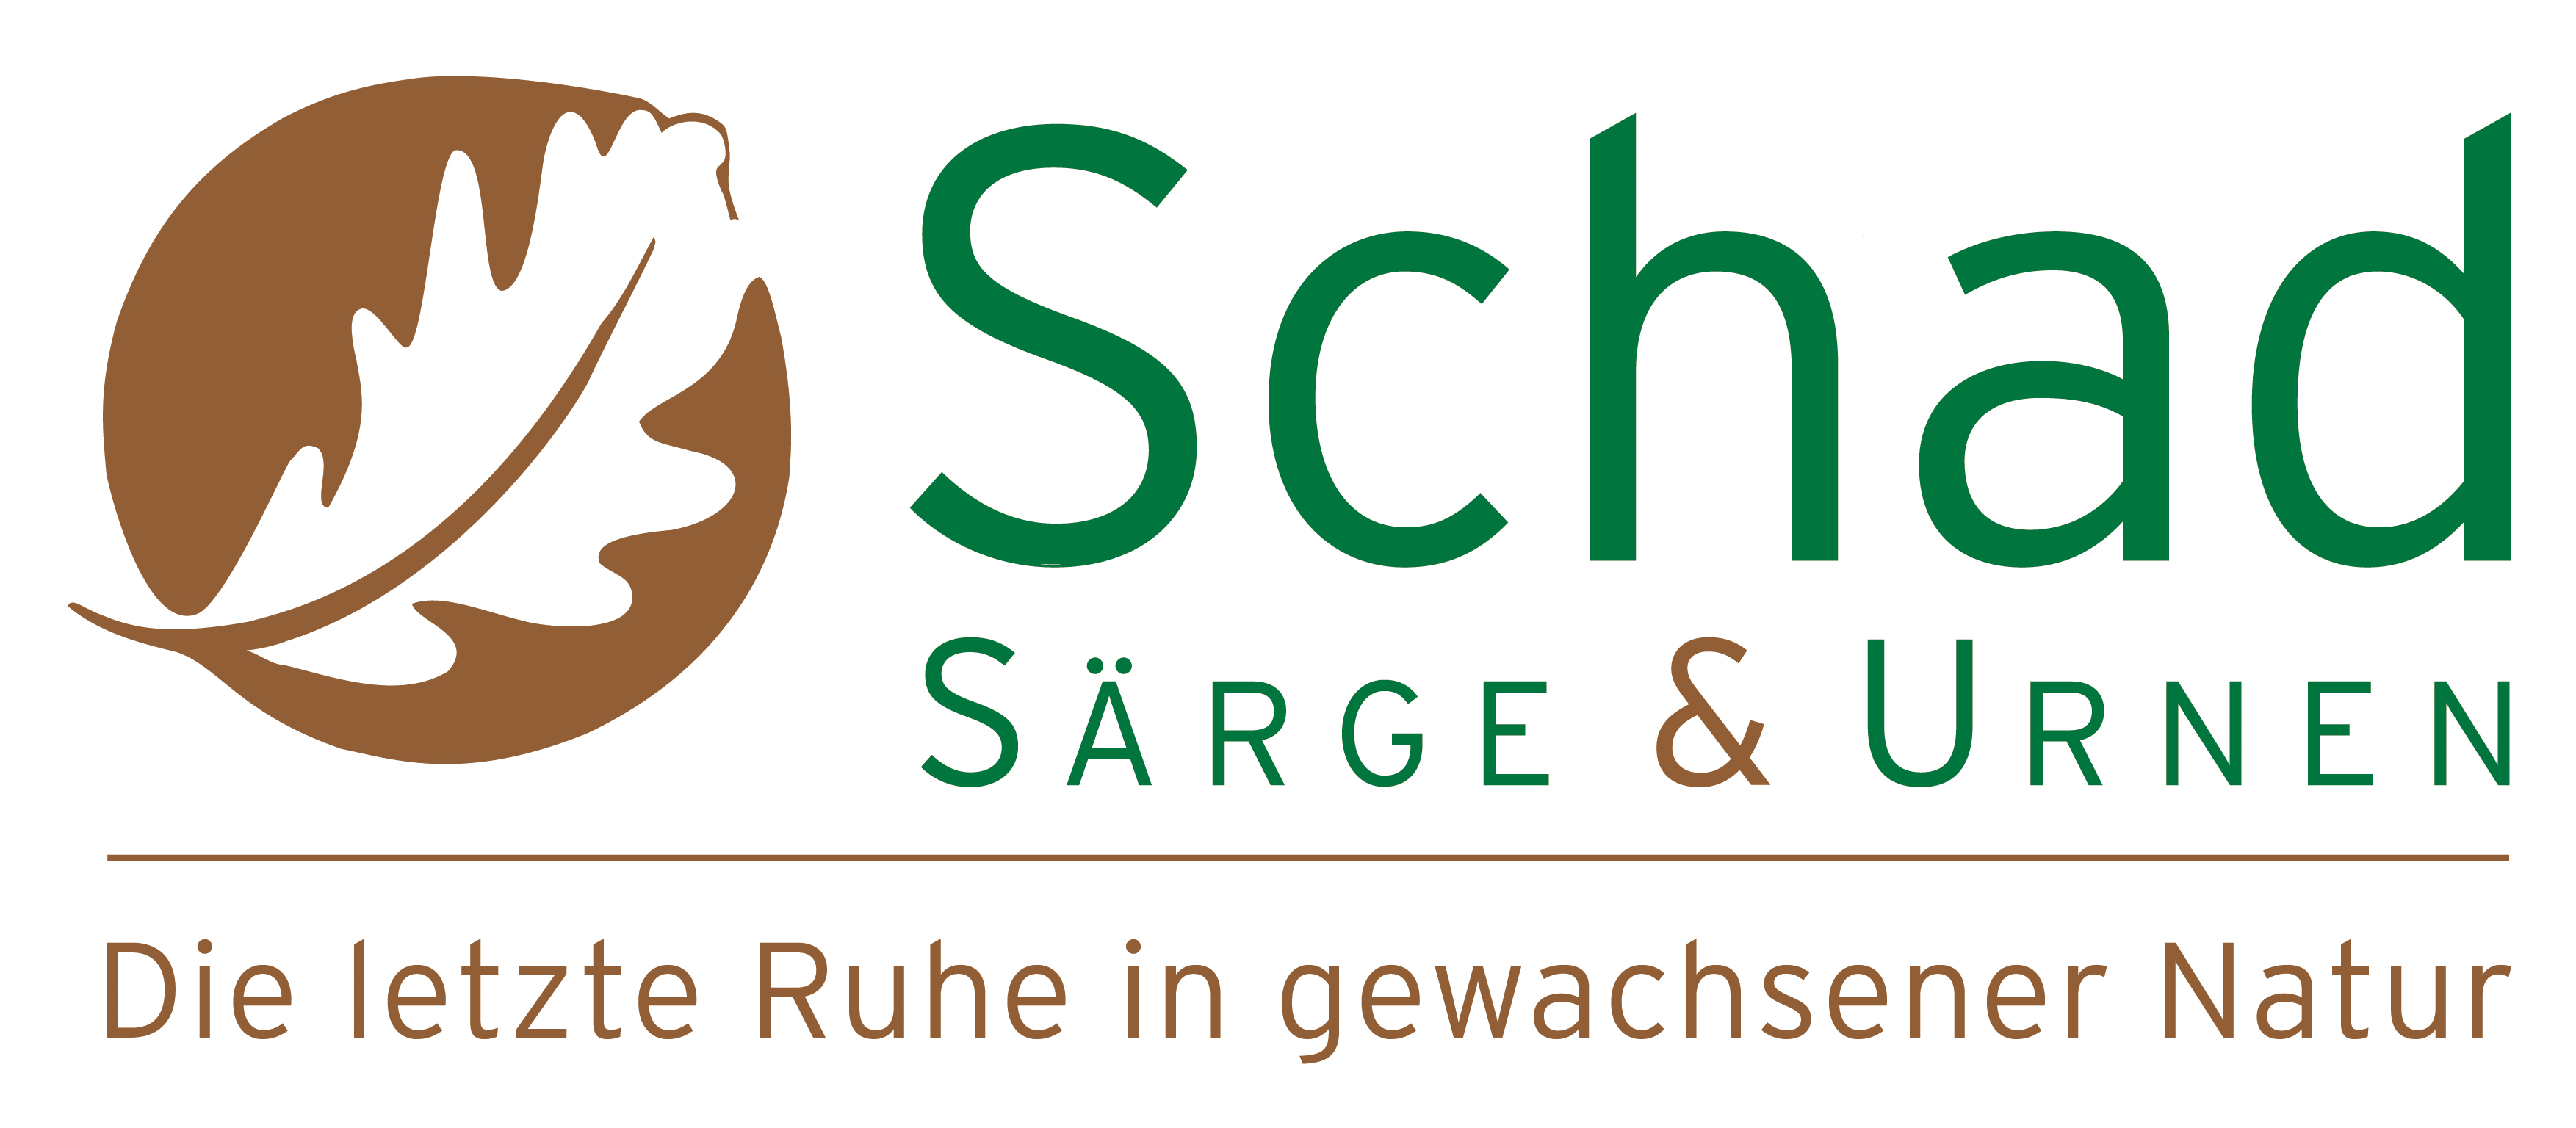 Schad GmbH